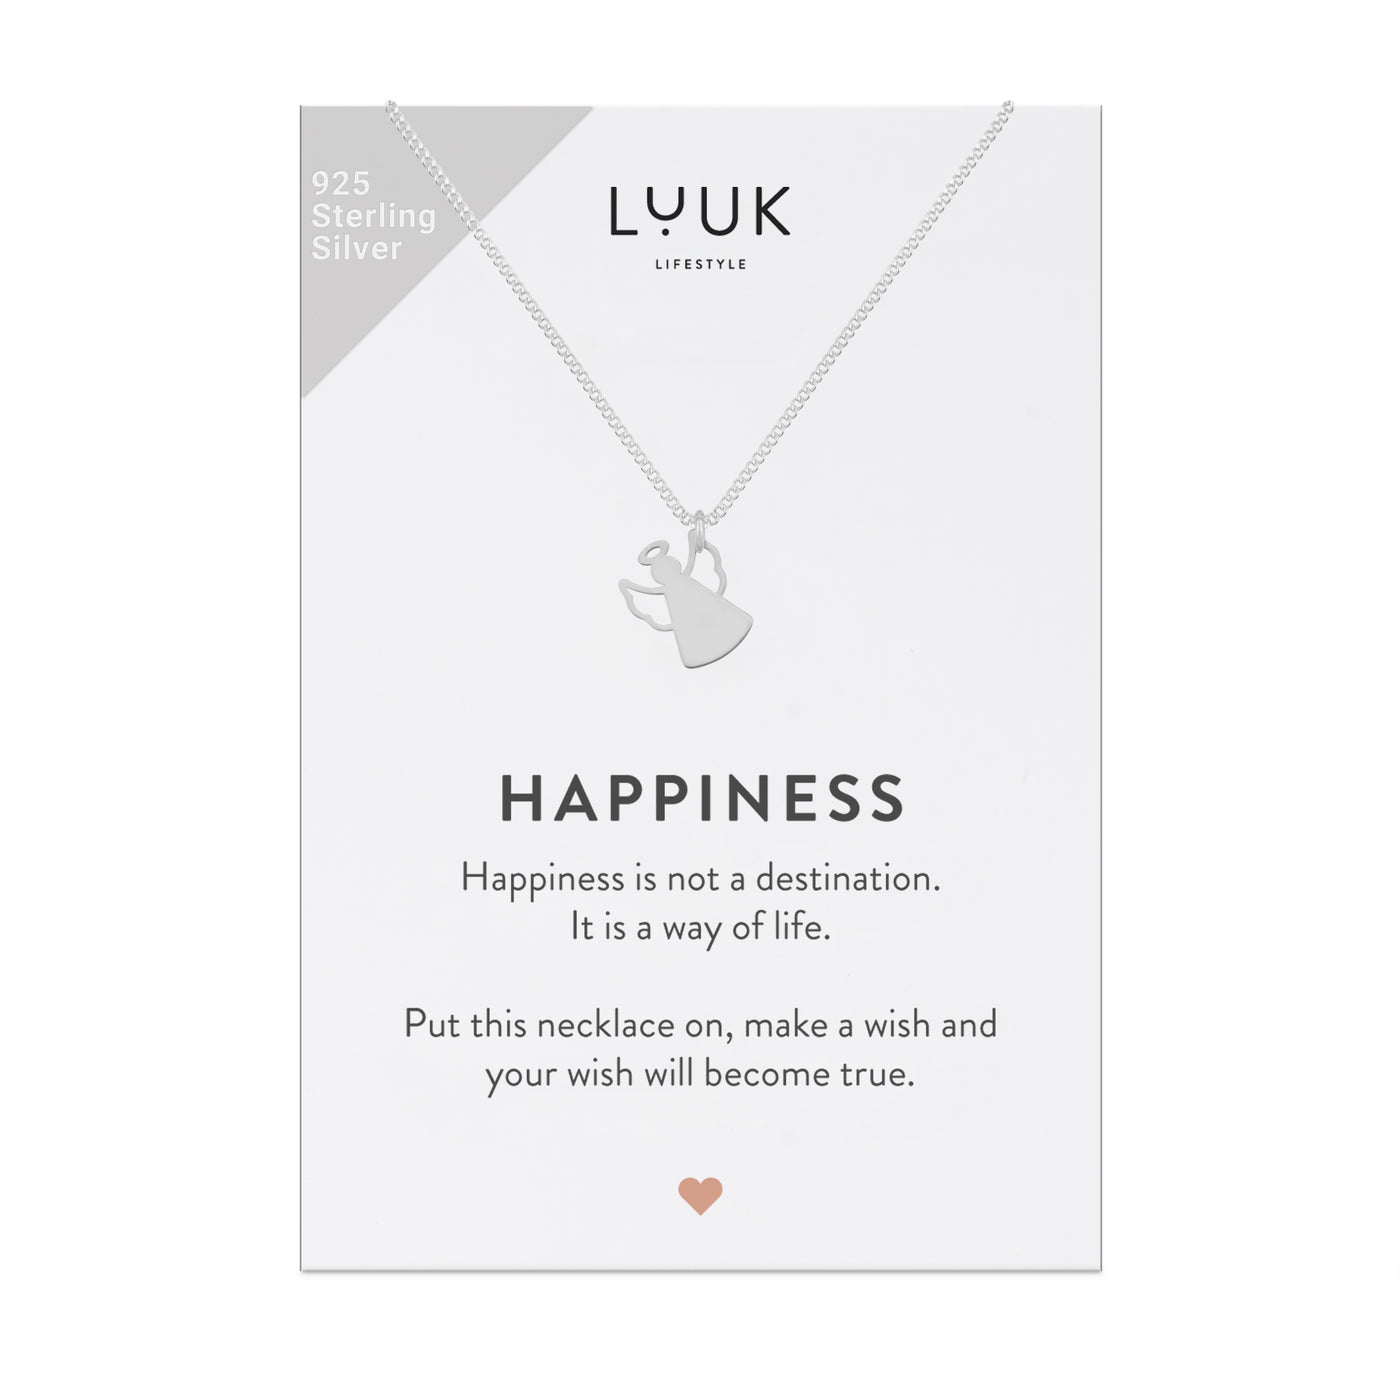 Feine 925 Silber Kette mit Schutzengel Anhänger auf Happiness Spruchkarte von der Marke Luuk Lifestyle 